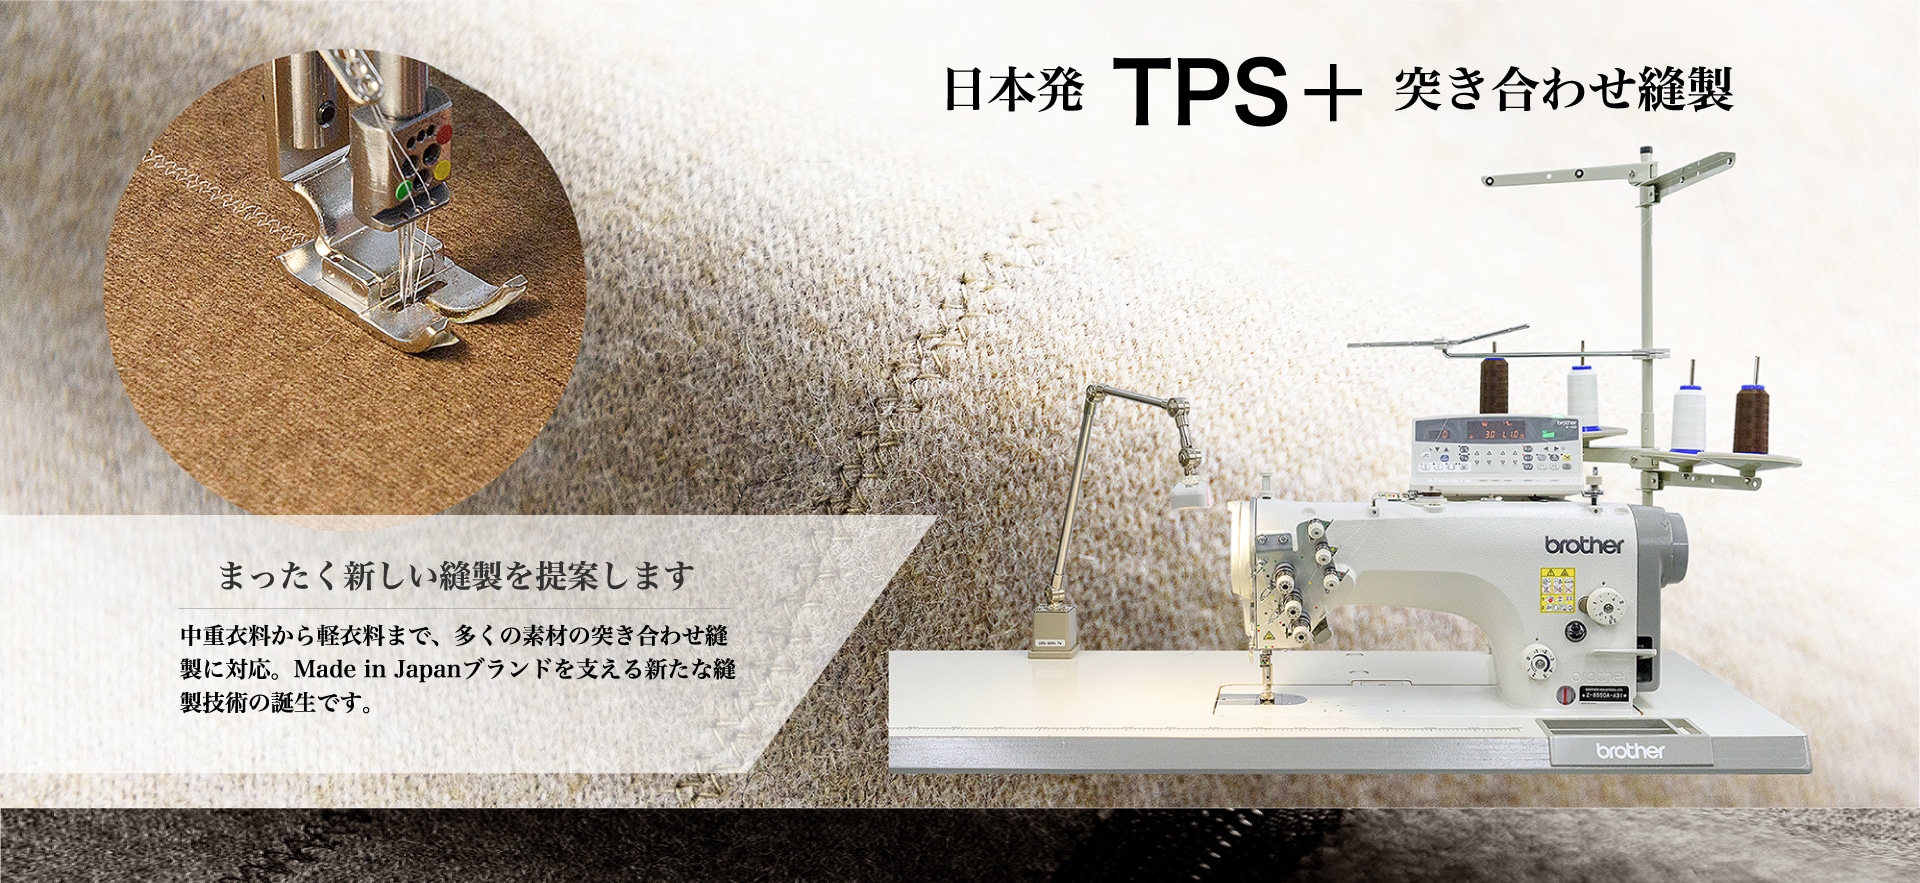 日本発 TPS＋ 突き合わせ縫製まったく新しい縫製を提案します中重衣料から軽衣料まで、多くの素材の突き合わせ縫製に対応。Made in Japanブランドを支える新たな縫製技術の誕生です。